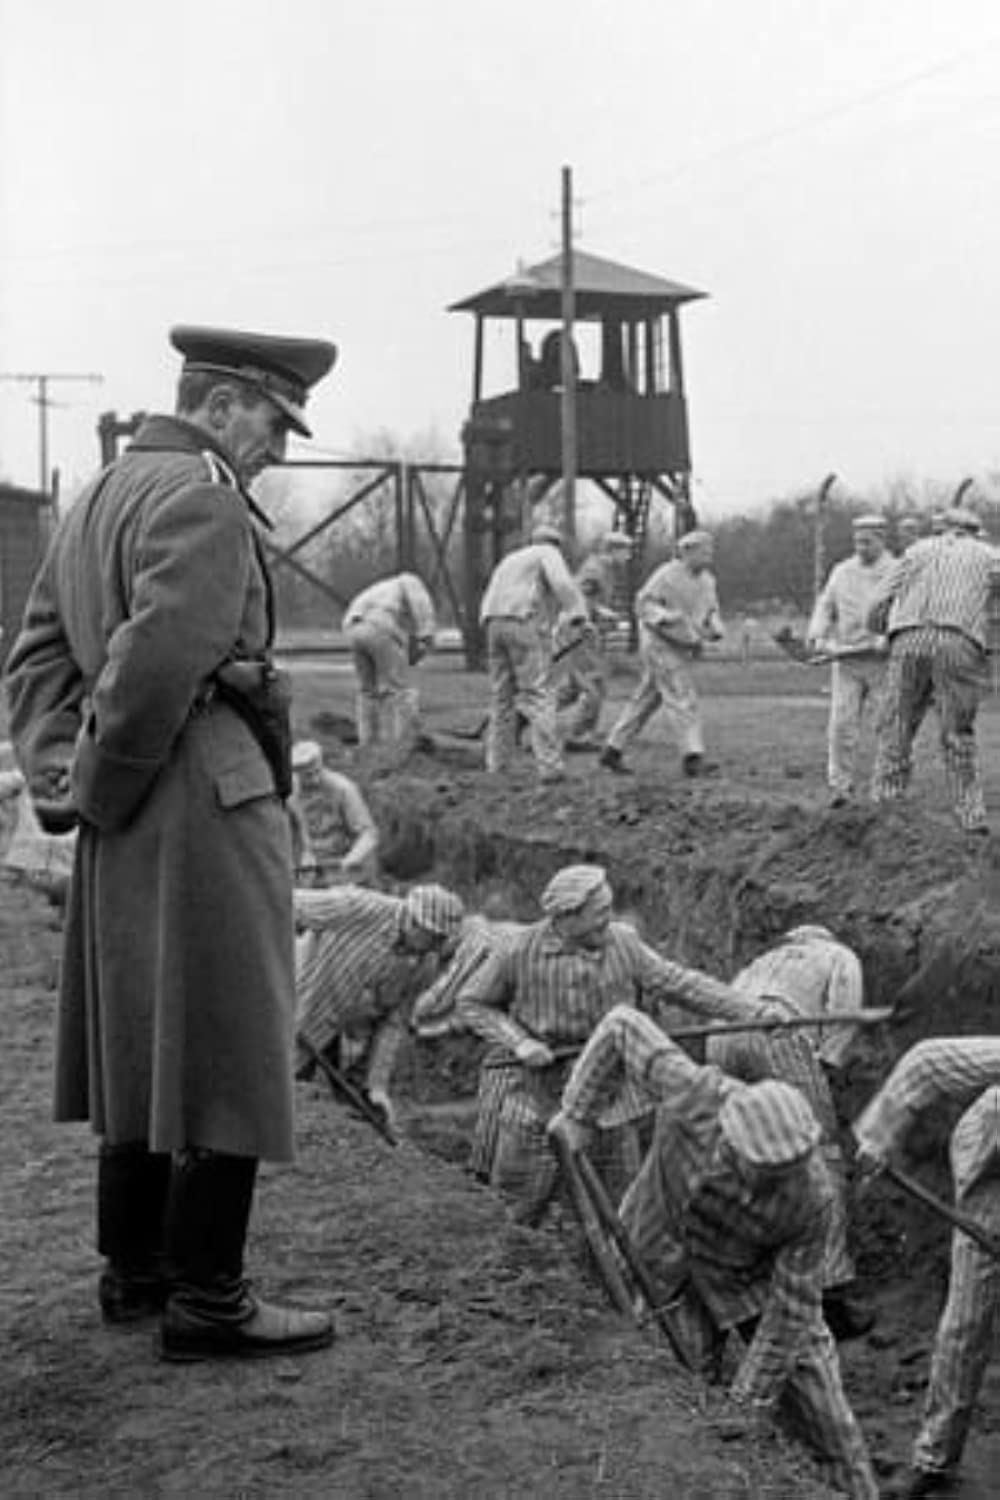 Filmbeschreibung zu Ein Tag - Bericht aus einem deutschen Konzentrationslager 1939